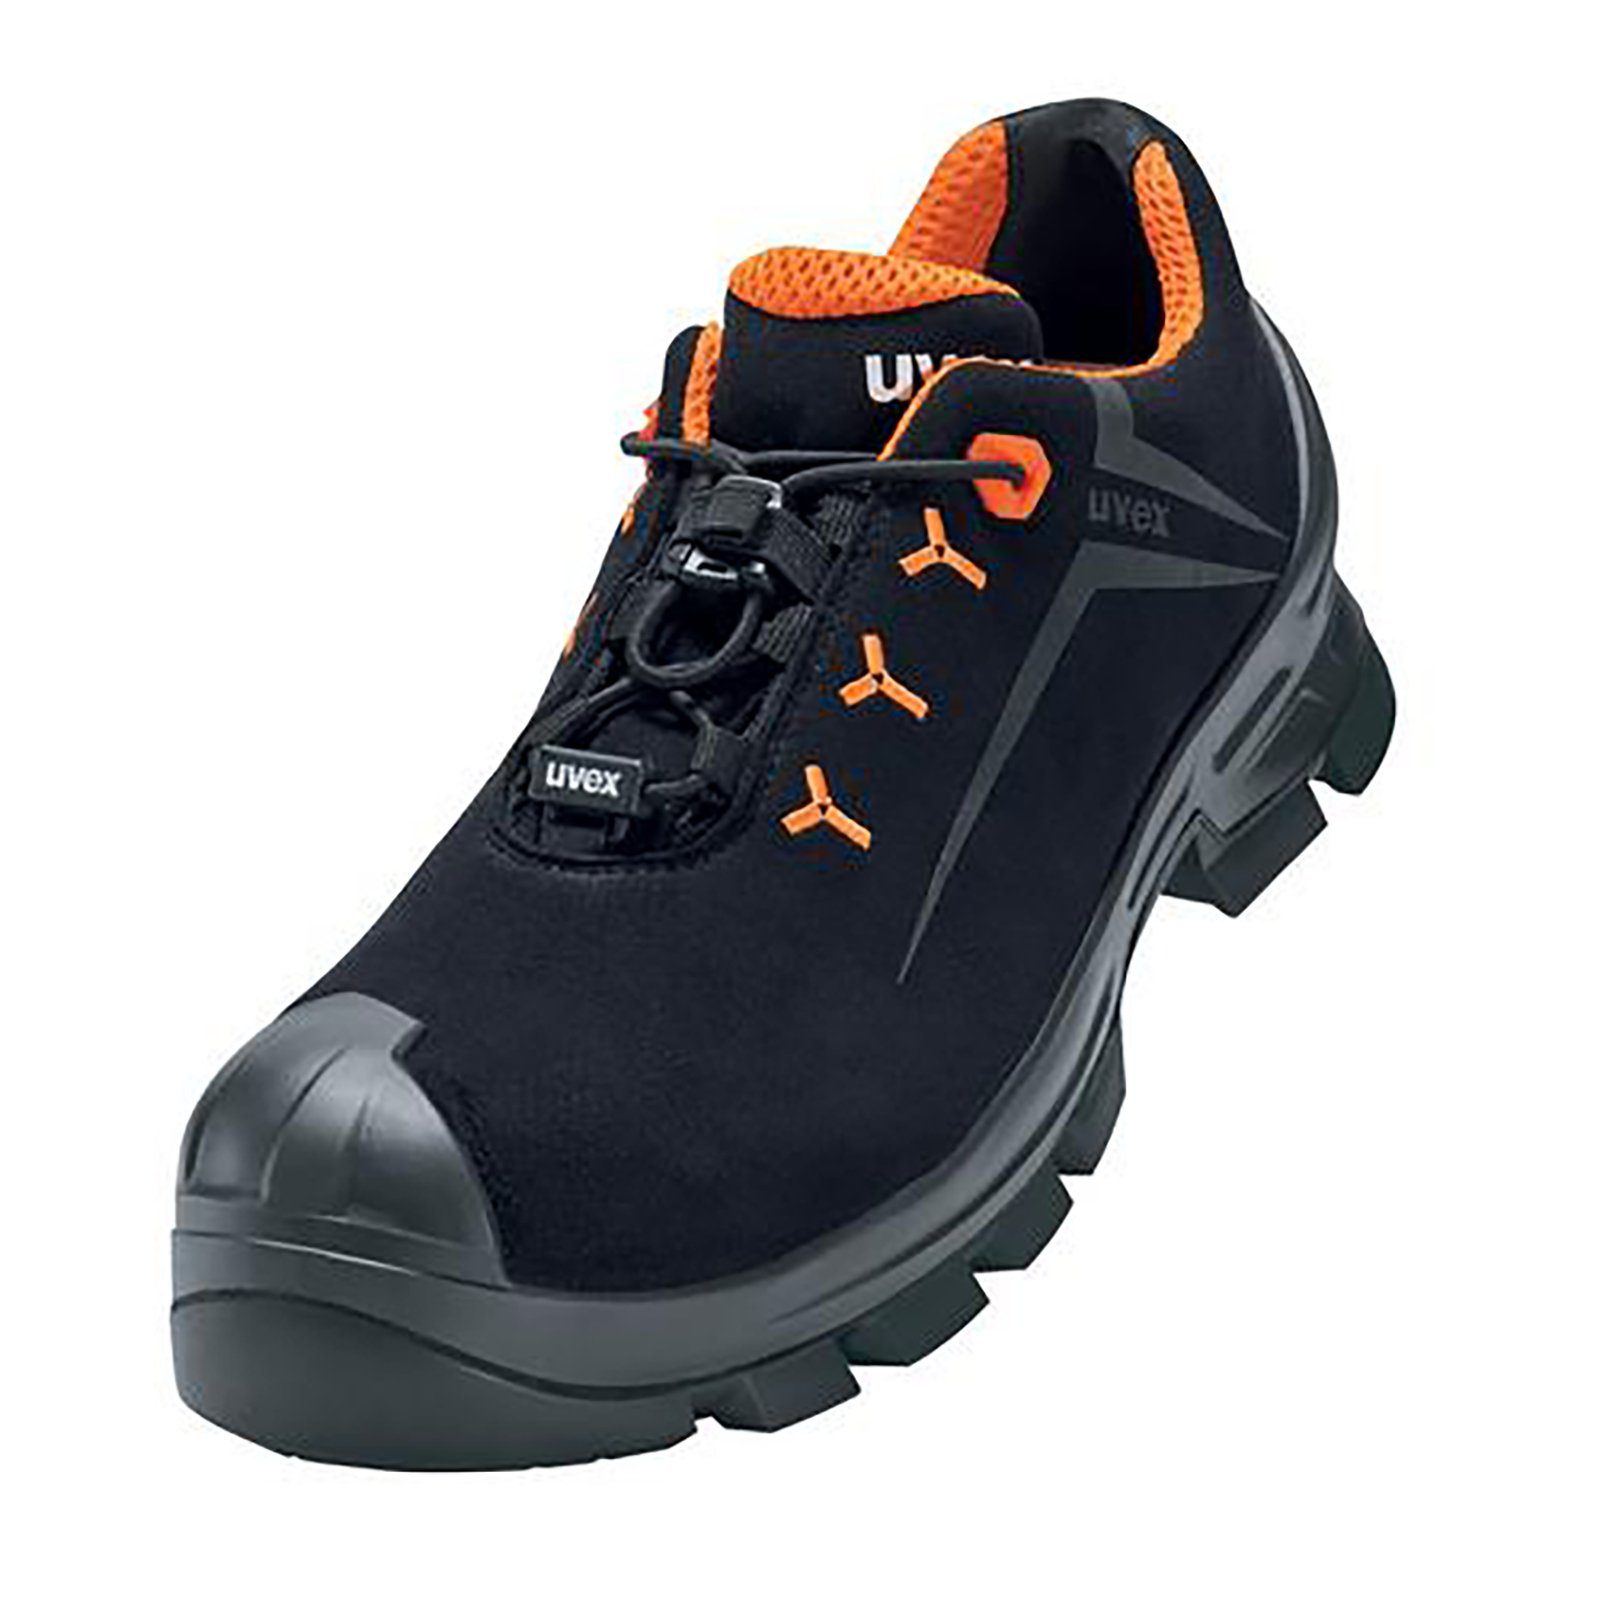 Uvex schwarz, Halbschuhe orange S3 2 Sicherheitsschuh MACSOLE® 11 Weite